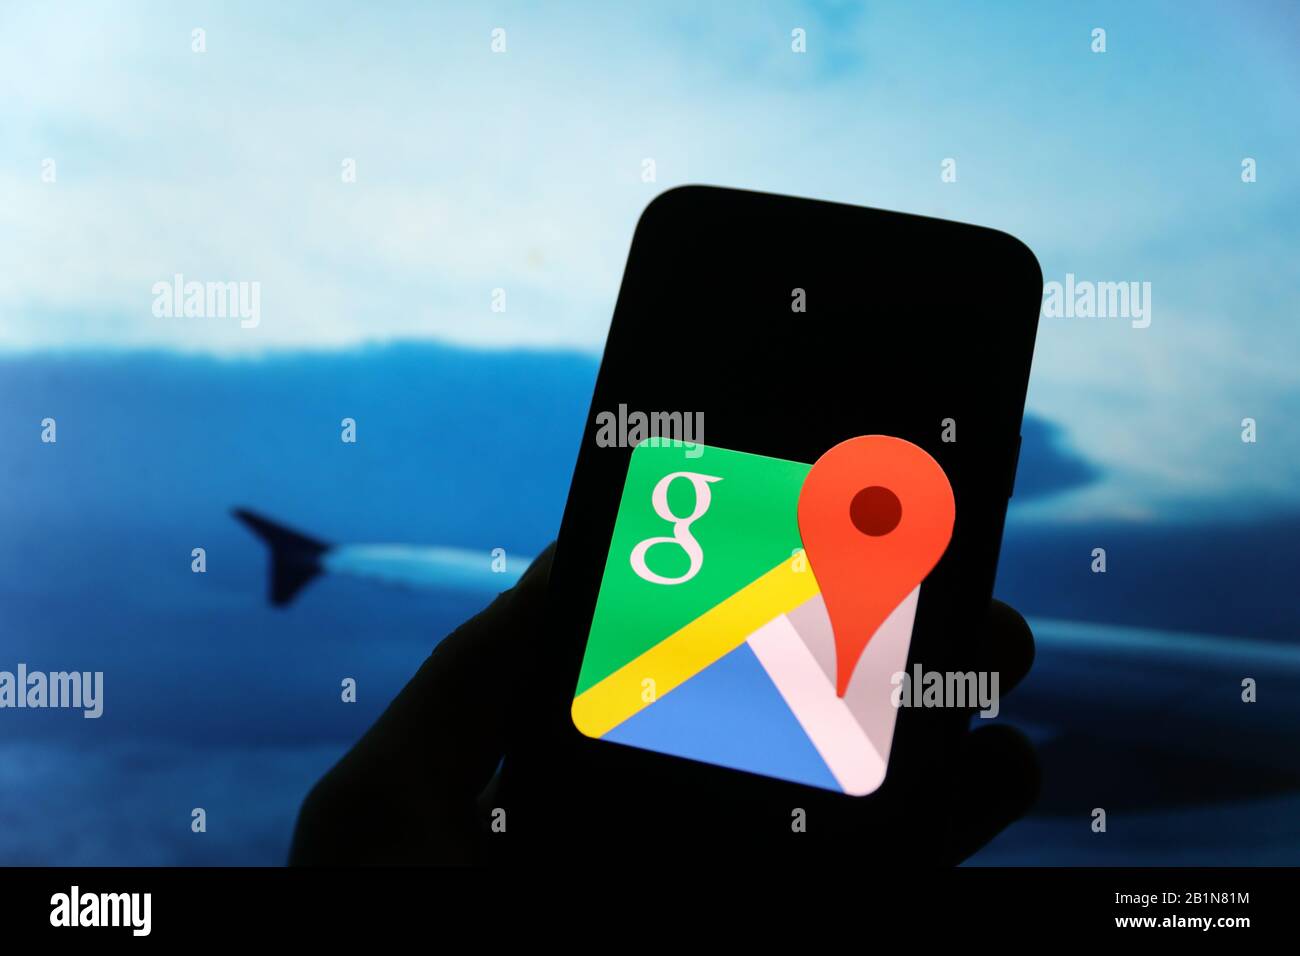 Le logo Google s'affiche sur l'écran du smartphone avec une vue de l'avion et une aile d'avion visible floue en arrière-plan Banque D'Images